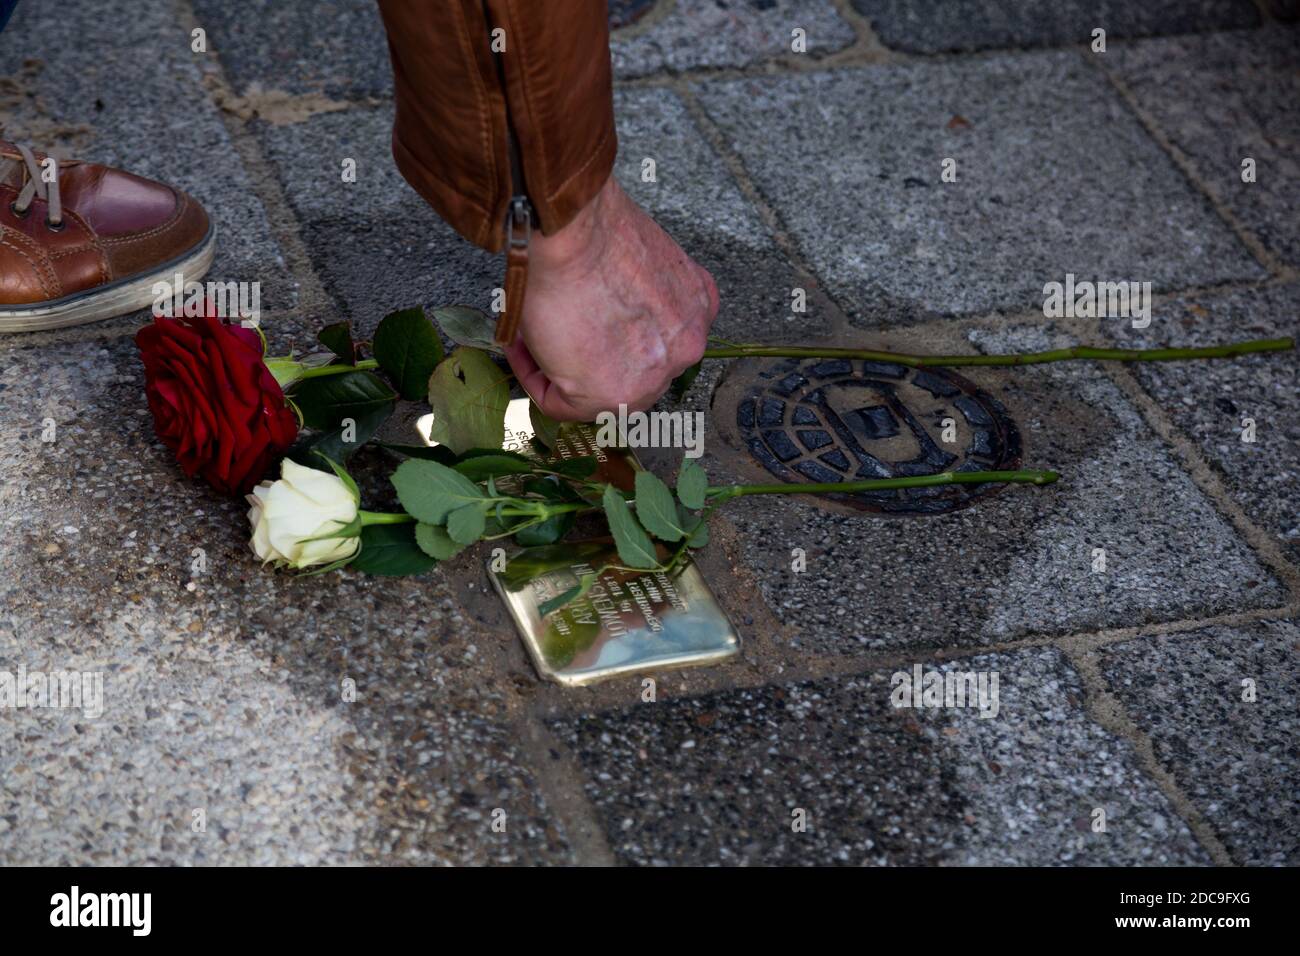 13.10.2020, Bremen, Bremen, Deutschland - Stolperstein frisch verlegt. Stolpersteine werden in ganz Deutschland verwendet, um Nazi-Deportierten einen Namen bei tei zu geben Stockfoto